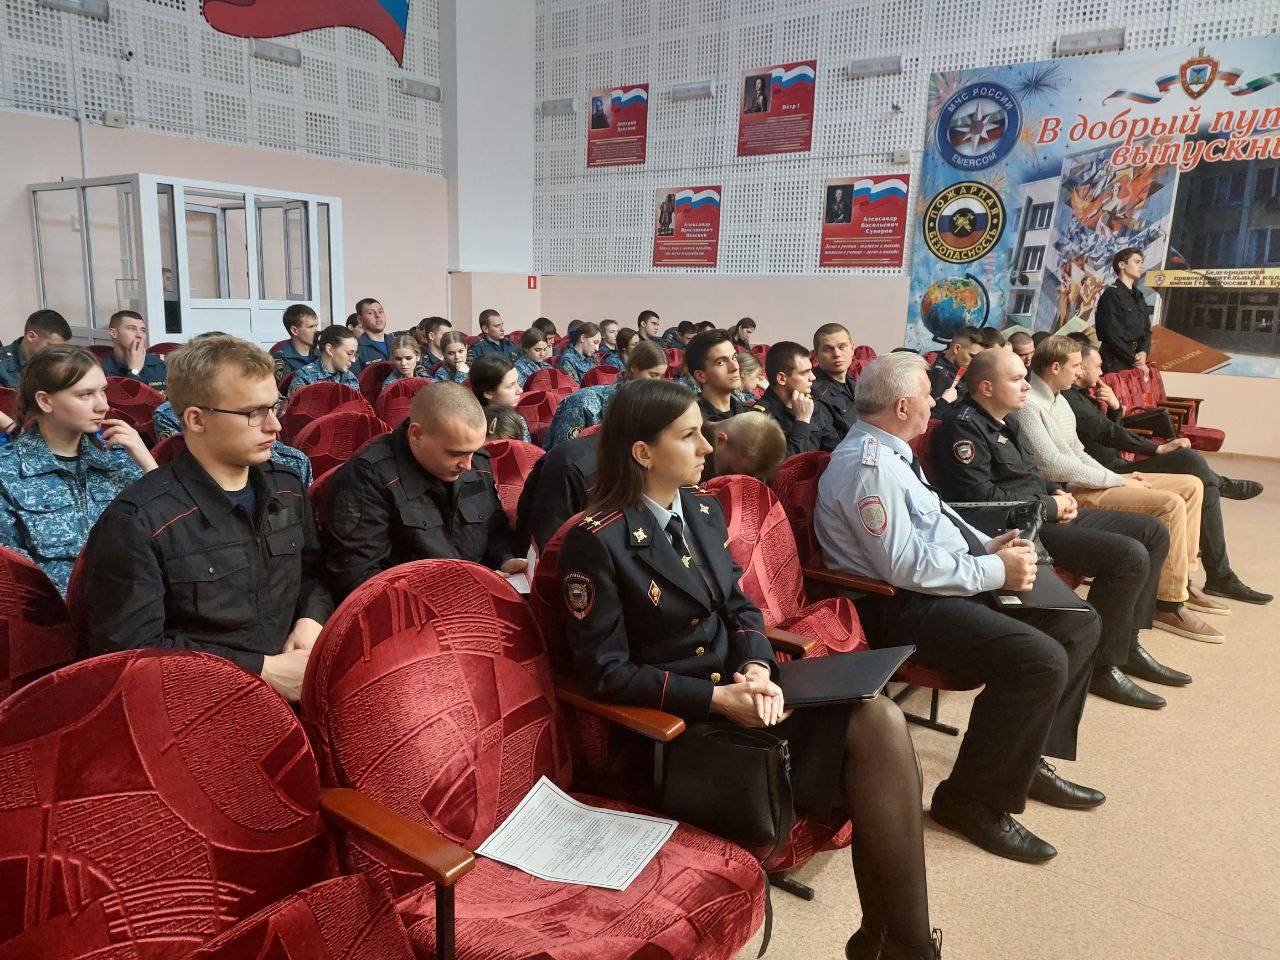 Сотрудники ОМВД России по Белгородскому району в рамках областной акции «Карьерный старт» встретились со студентами правоохранительного колледжа.